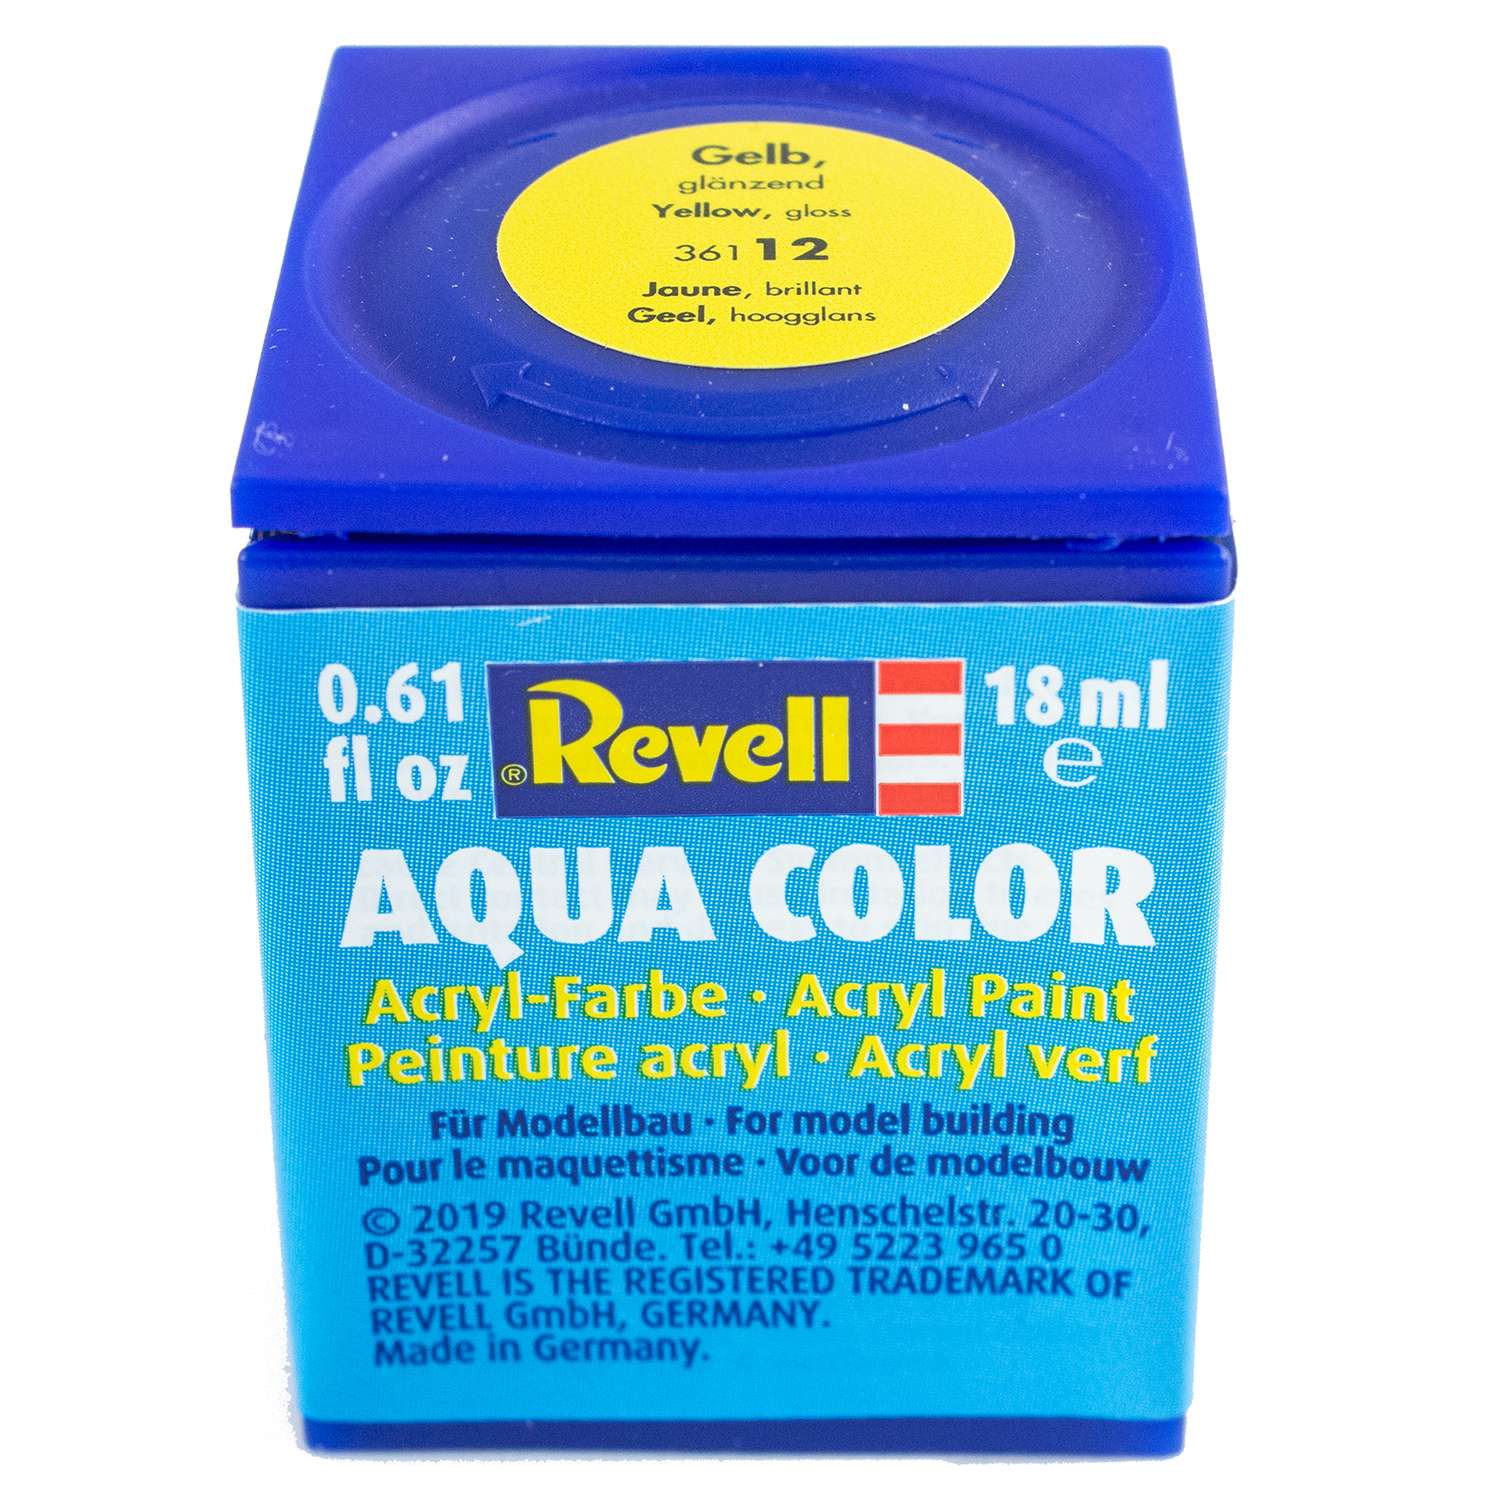 Аква-краска Revell желтая глянцевая 36112 - фото 1